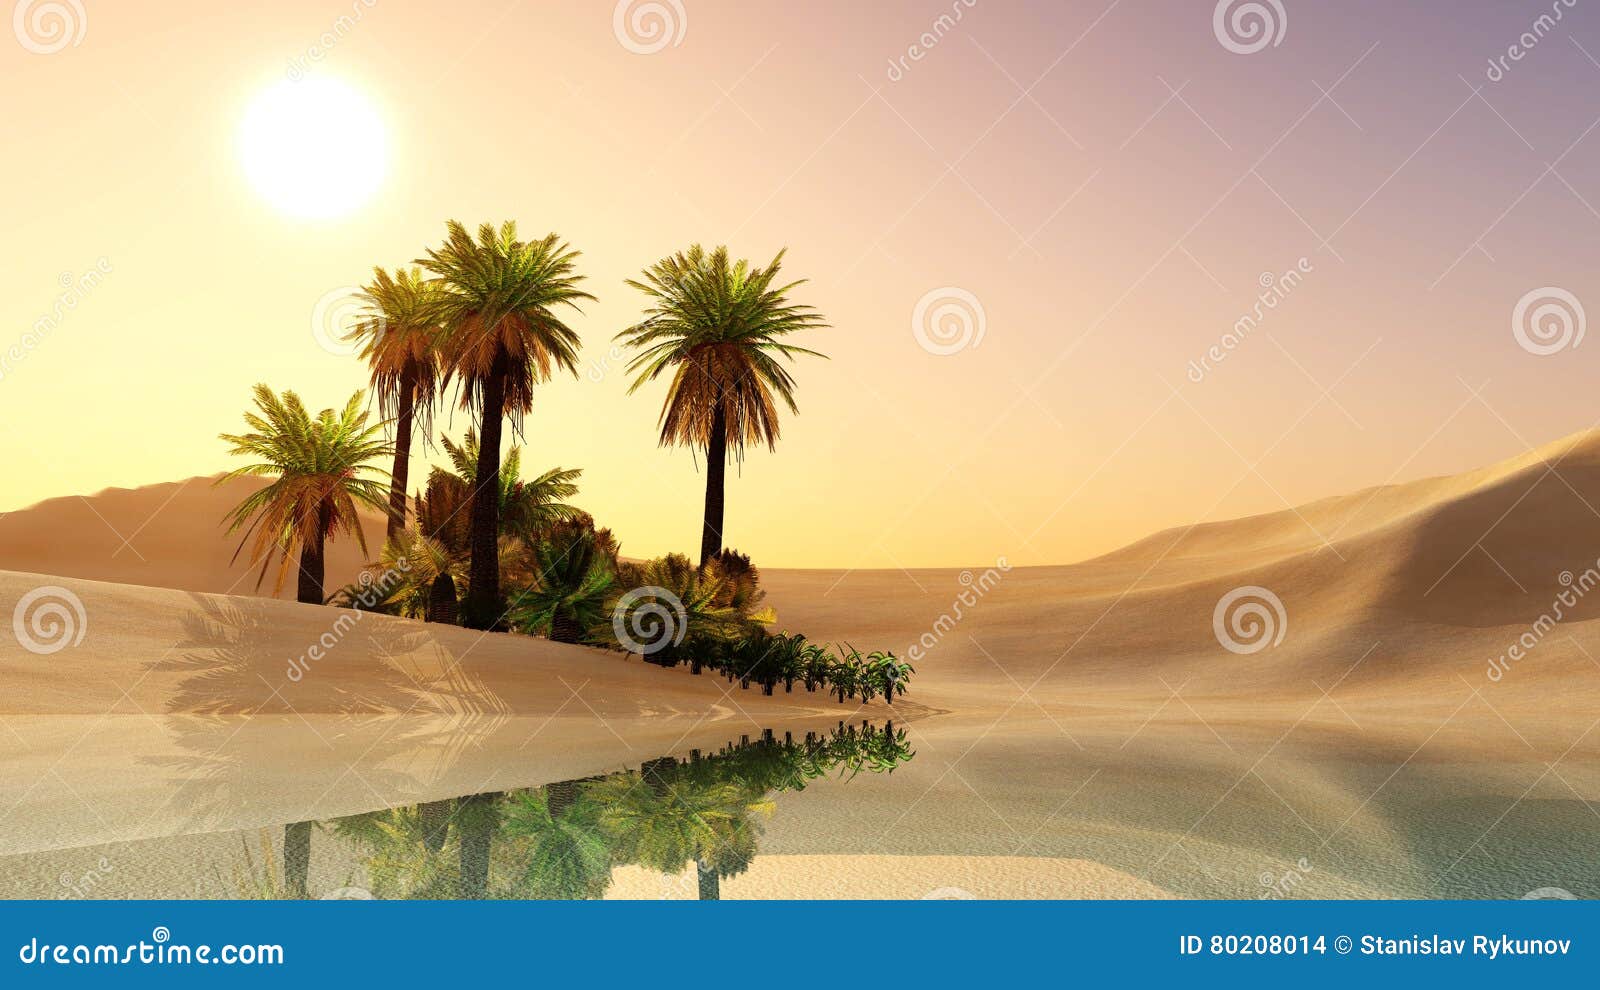 oasis in the desert sand